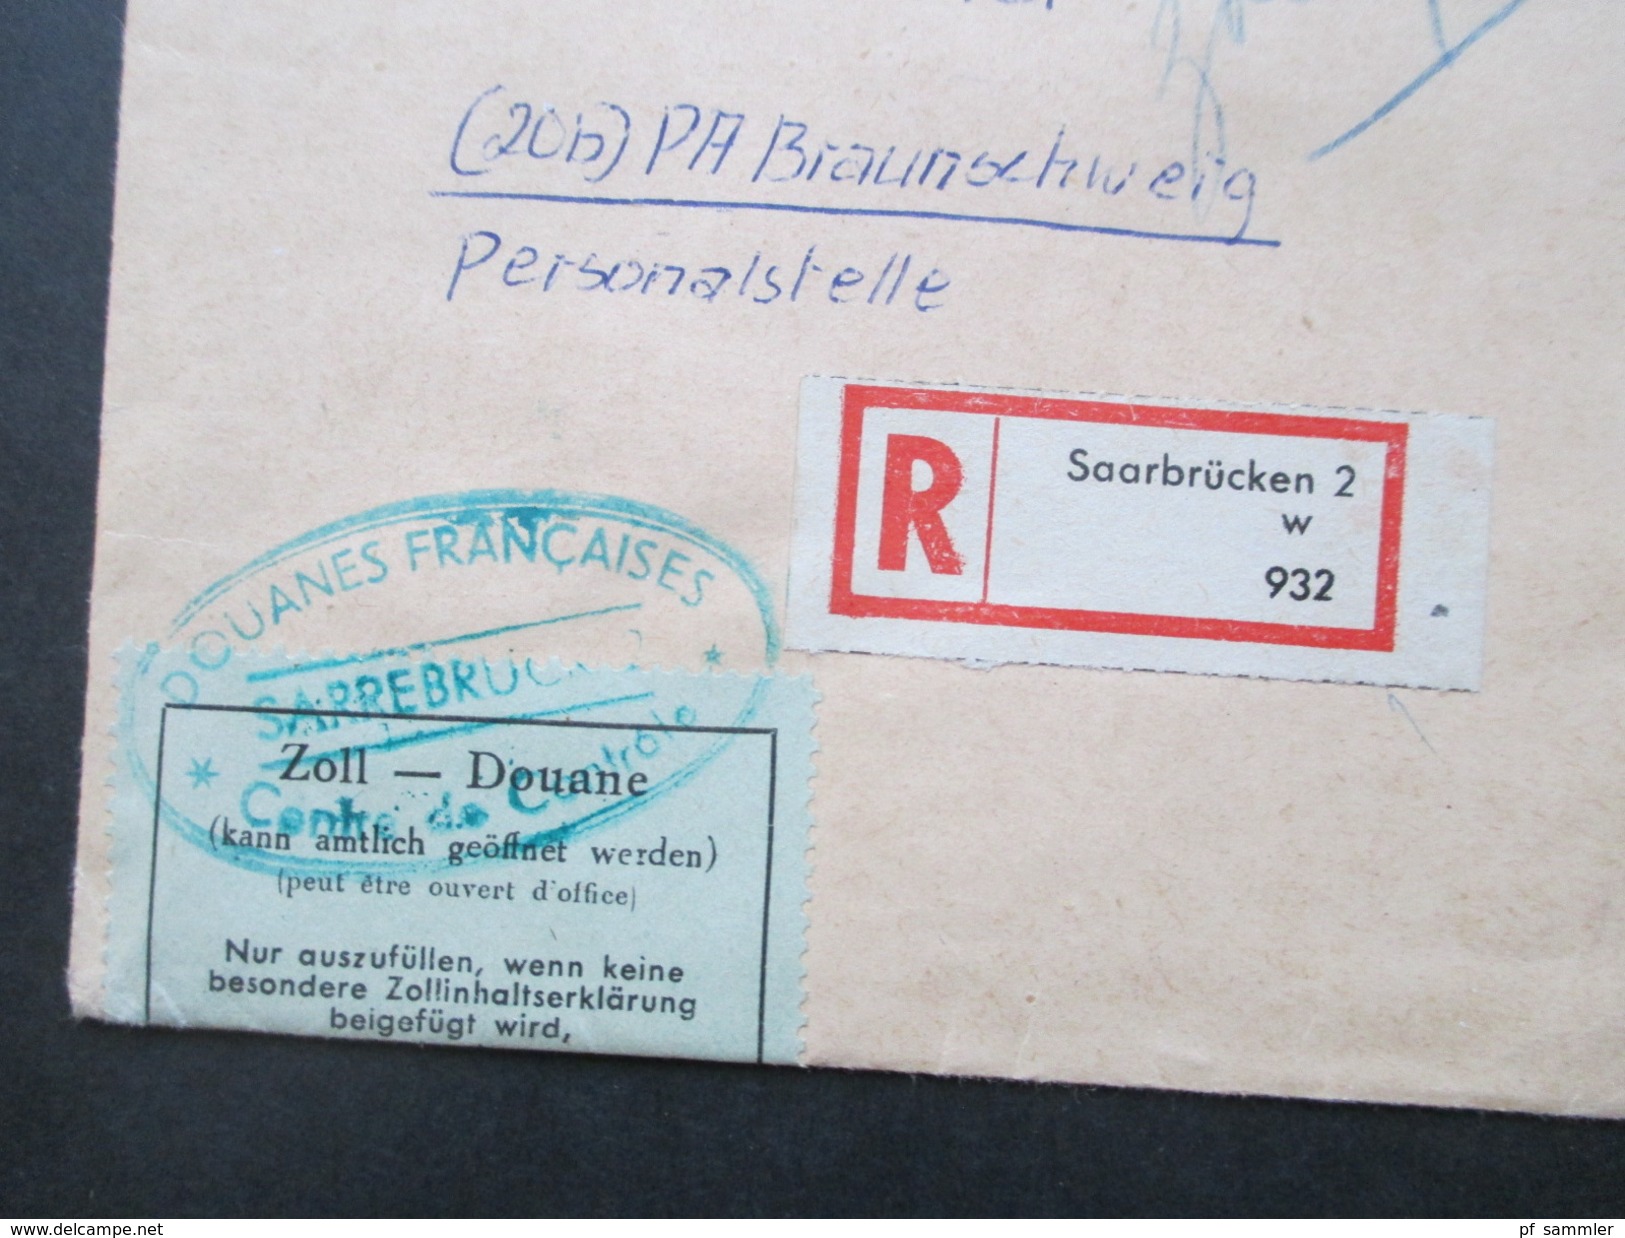 Saarland 1955 Nr. 362 - 364 FDC / Bedarf Volksbefragung. Einschreiben Mit Zollvermerk! Zollfrei / Versandstelle Für BM - Covers & Documents